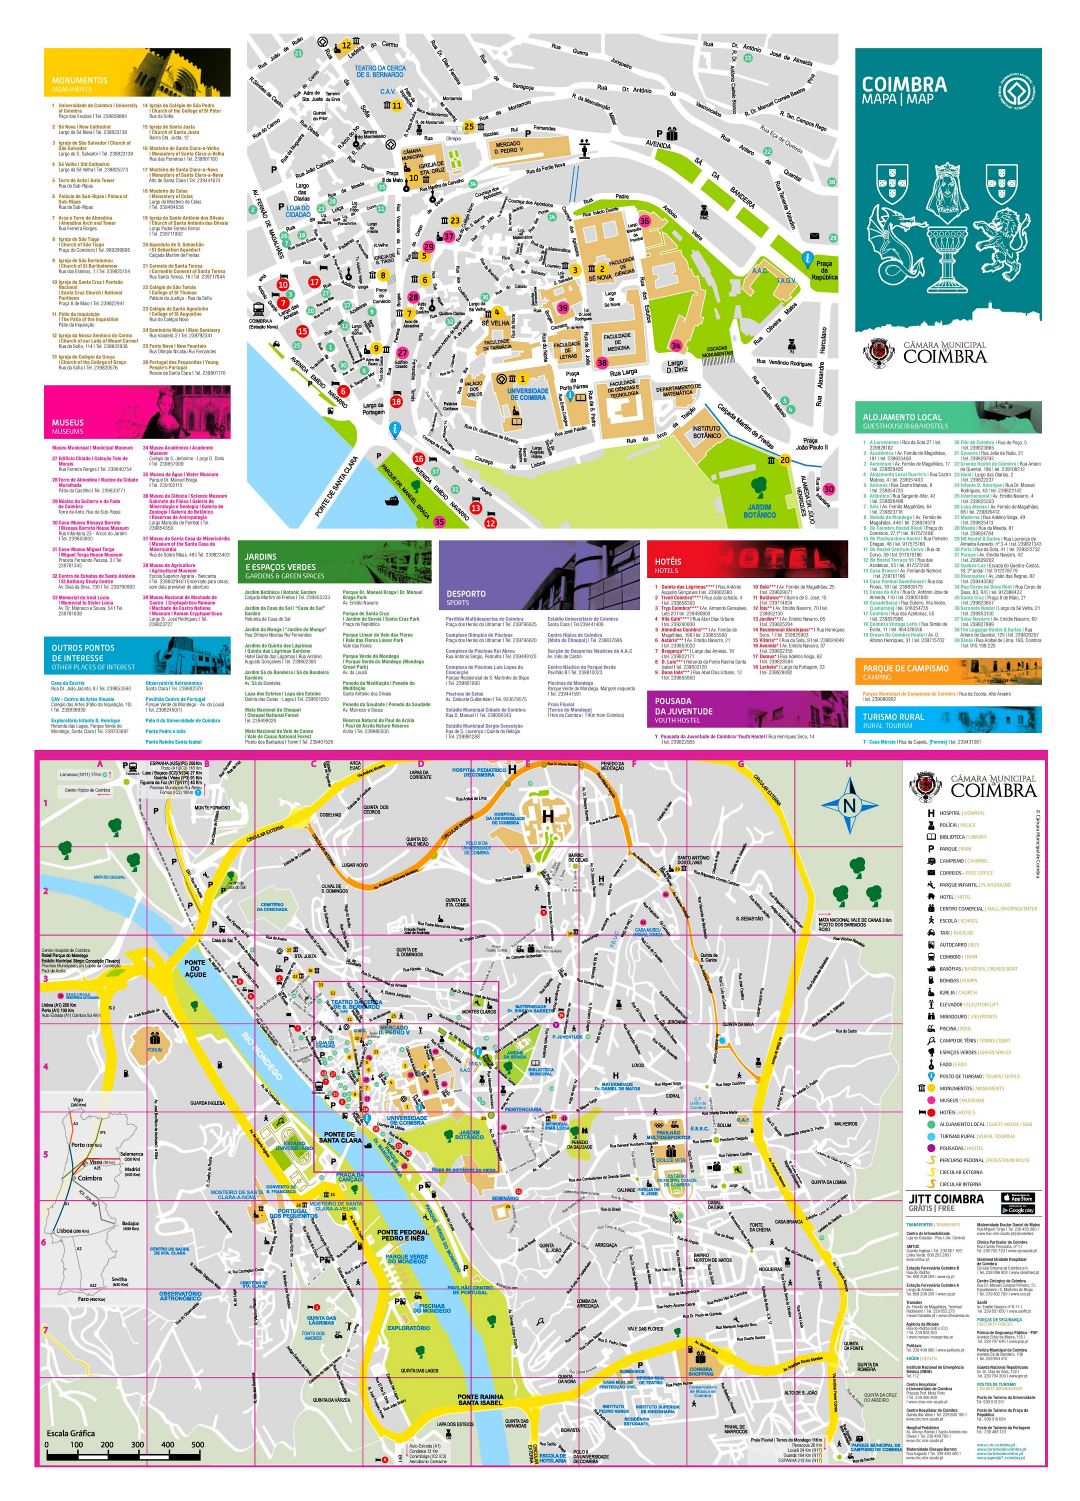 Grande detallado mapa turístico de la ciudad de Coimbra